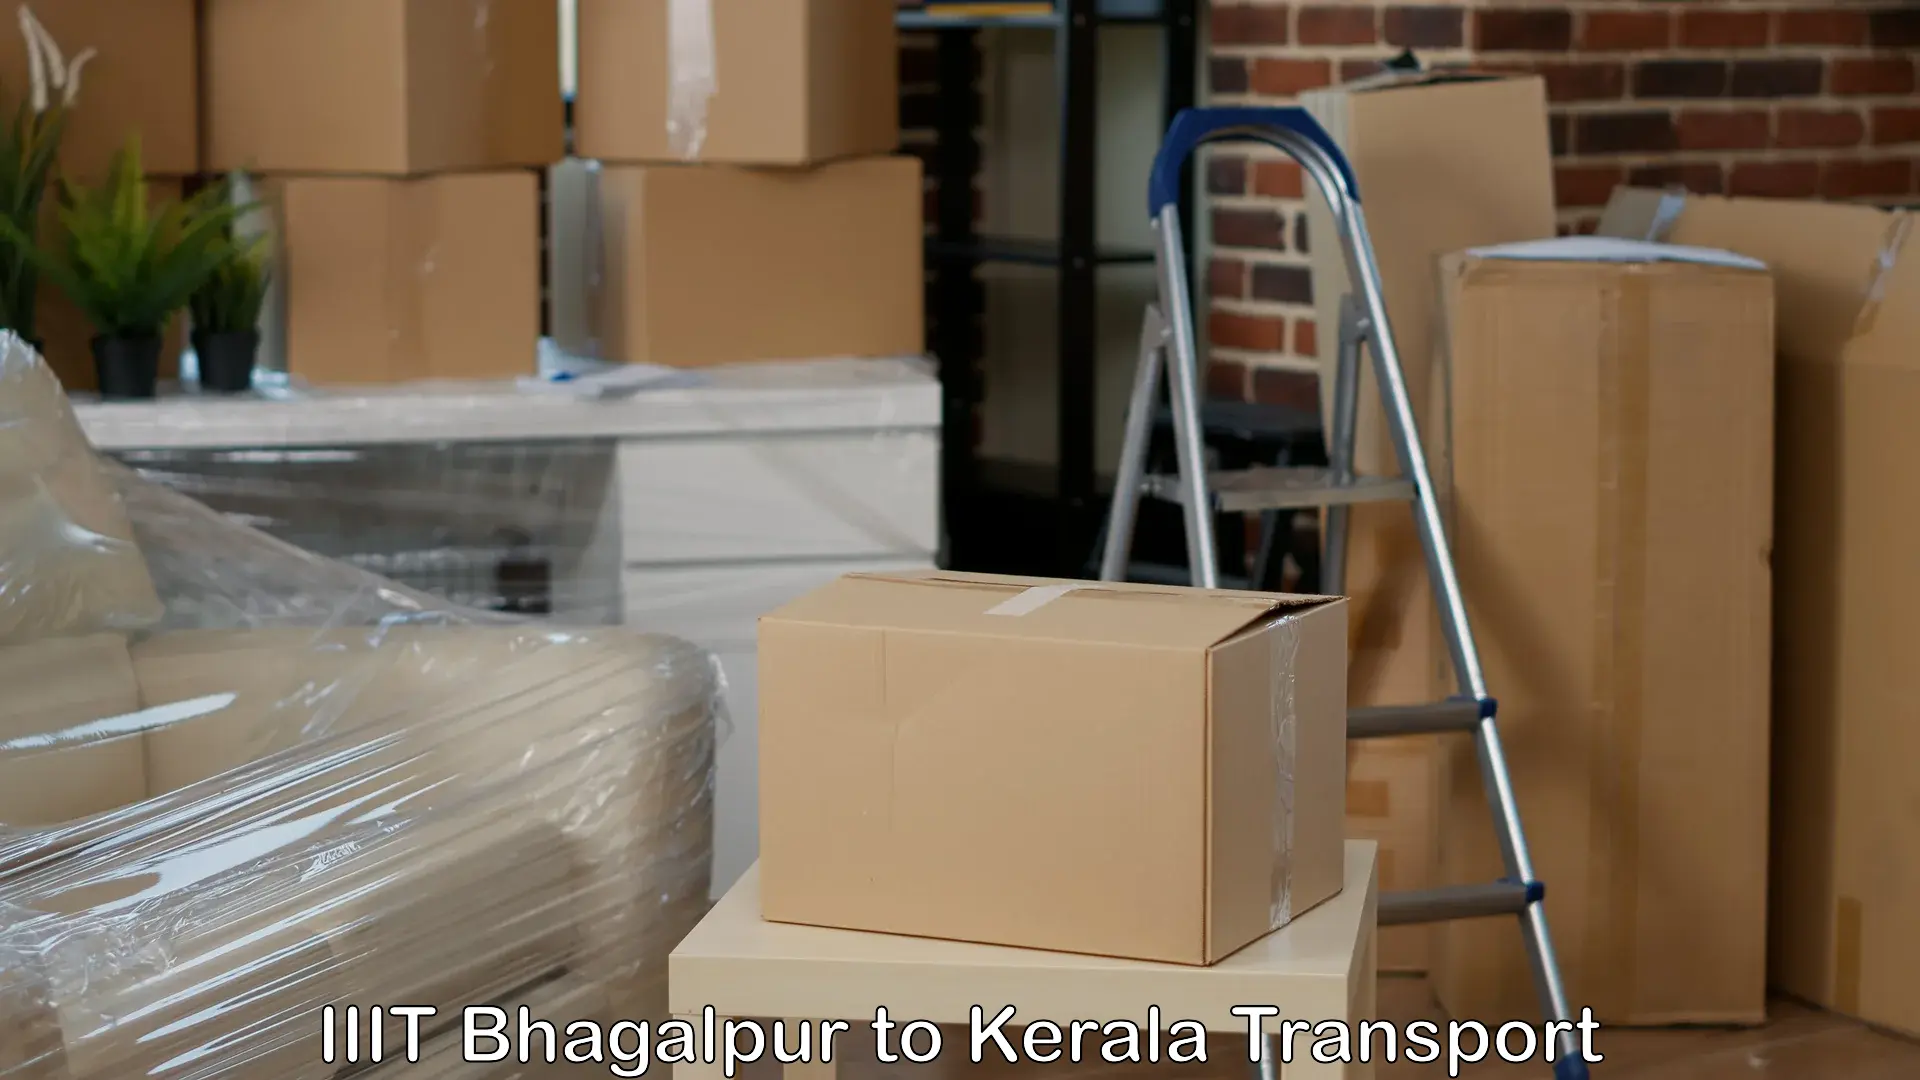 Shipping partner IIIT Bhagalpur to Kakkayam